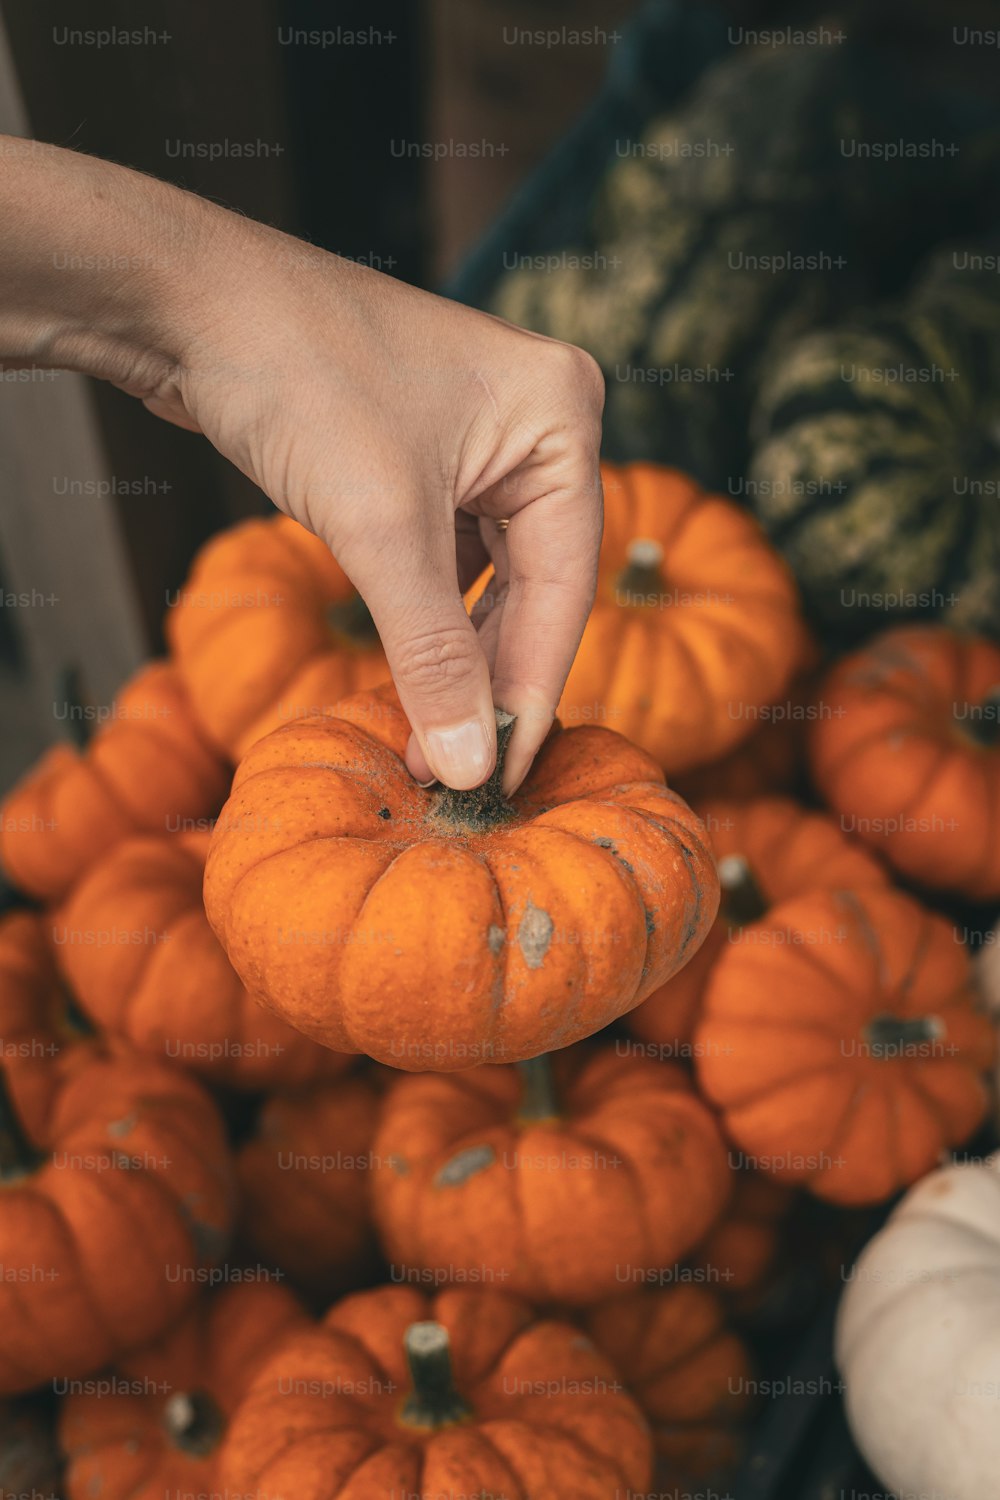 a hand picking a pumpkin from a pile of pumpkins